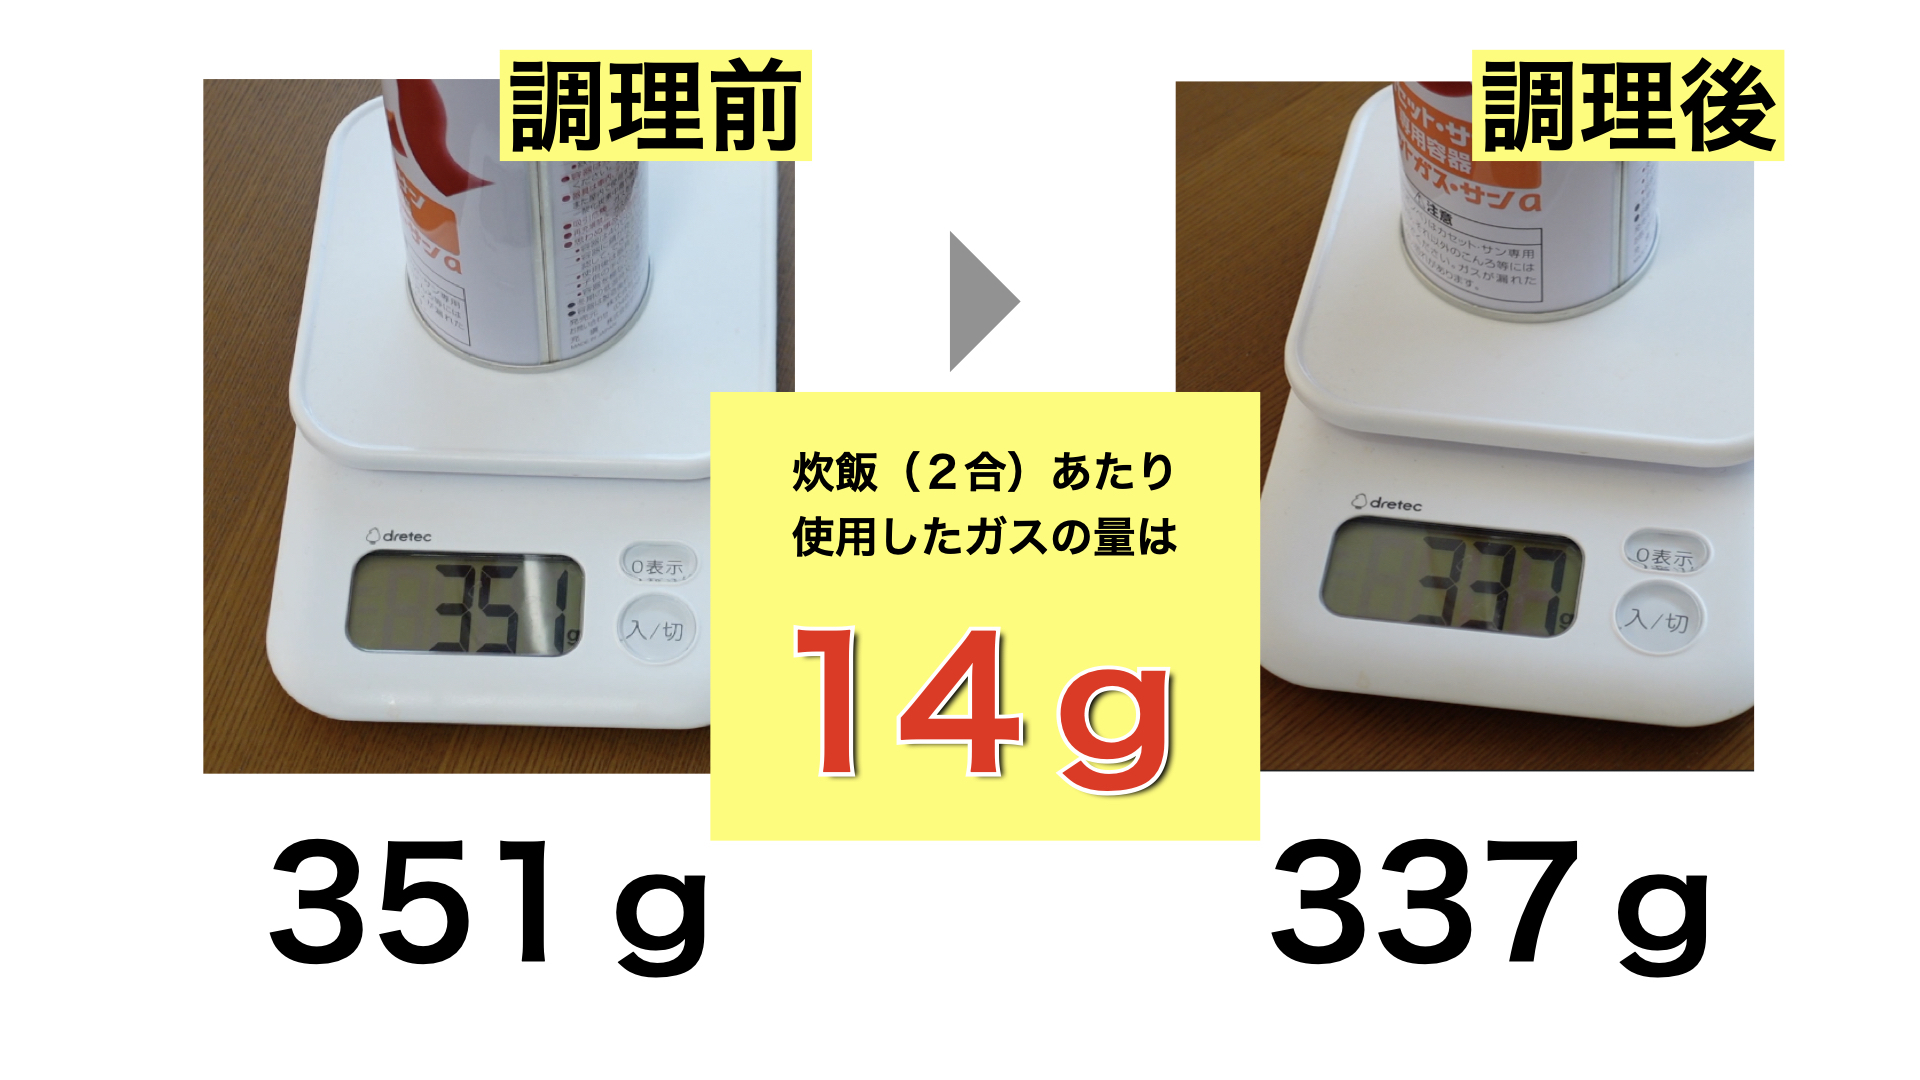 調理前と調理後のガスボンベの重さを計って検証